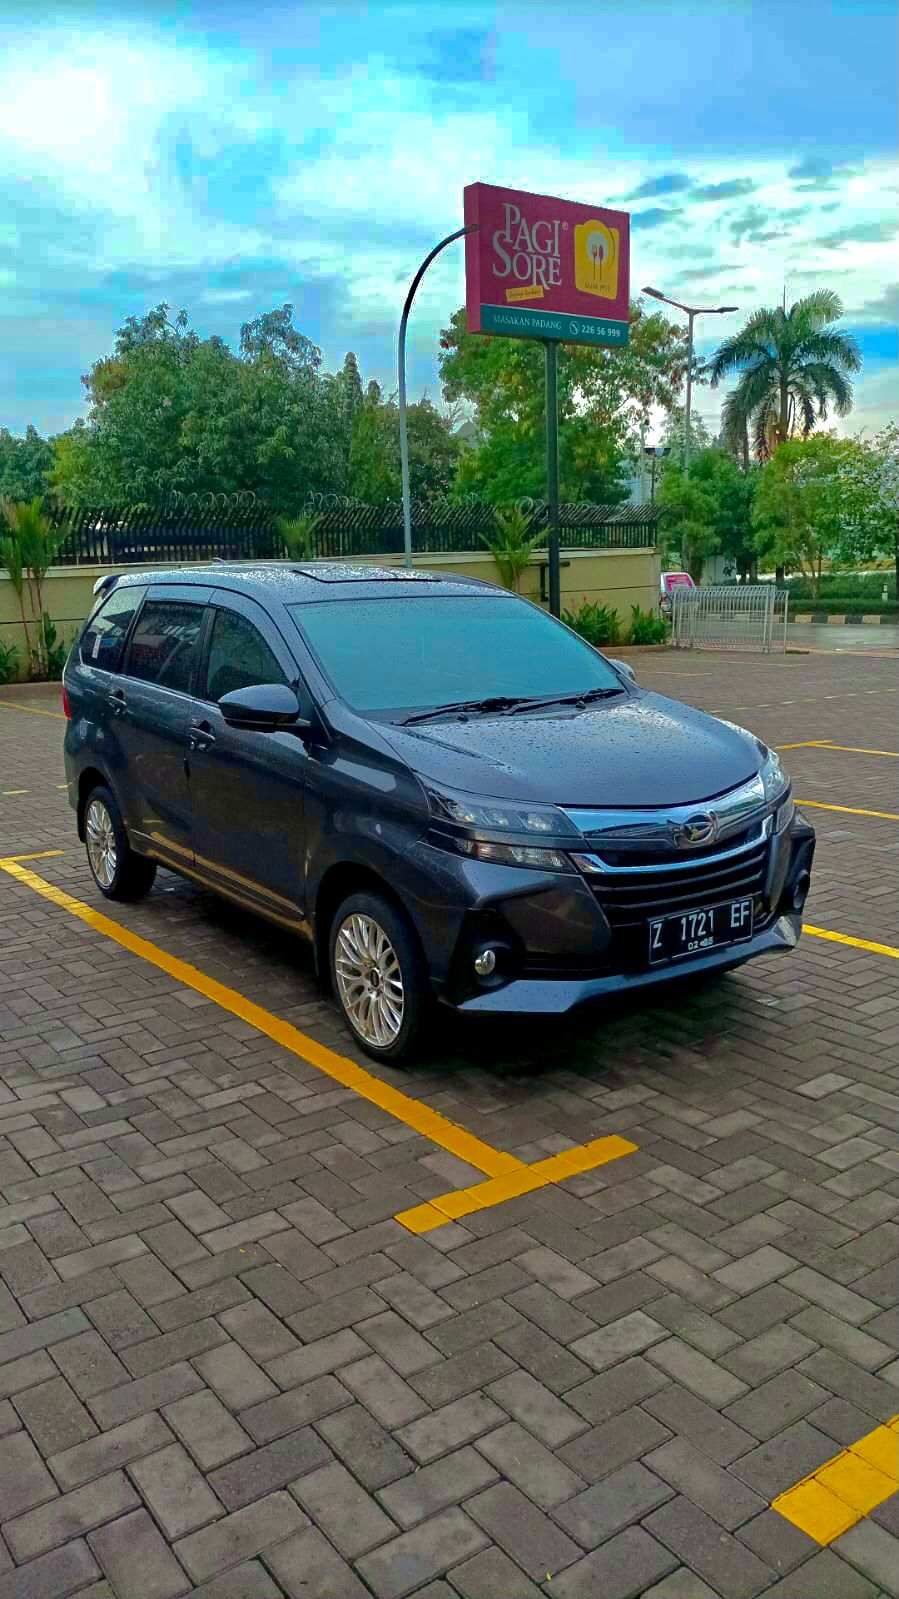 Harga Sewa Mobil Avanza Di Surabaya